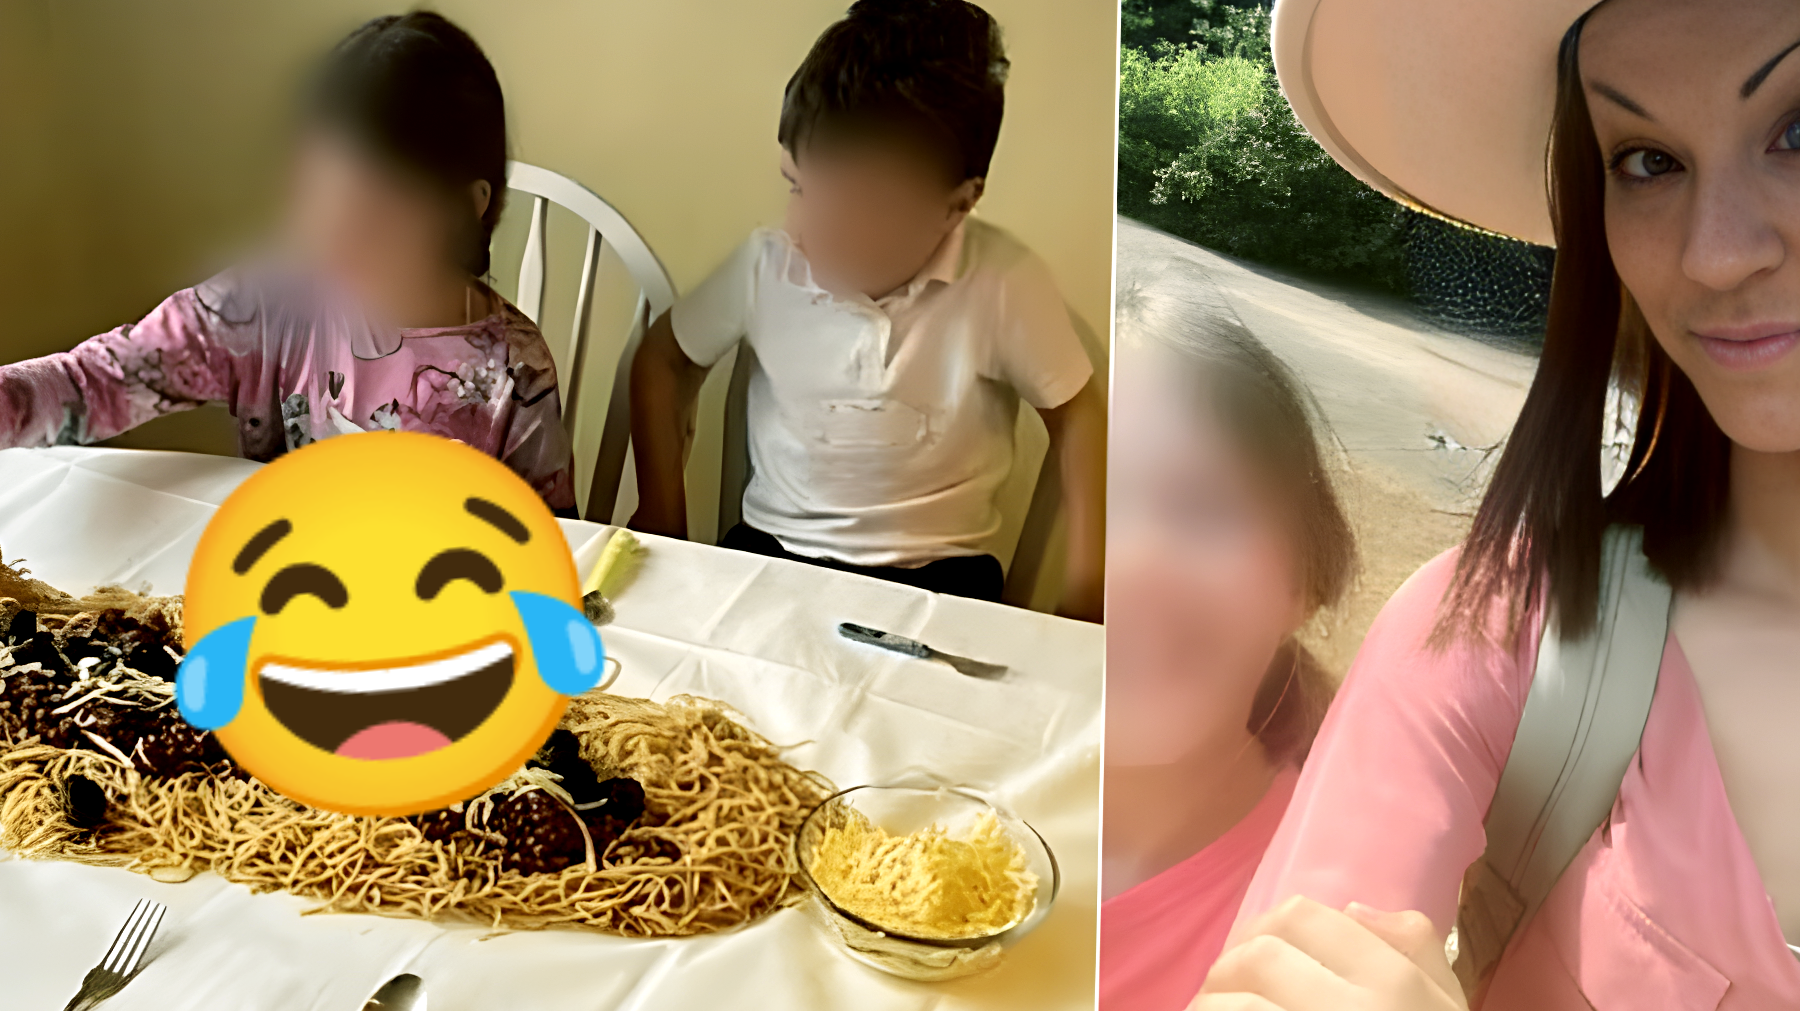 Mamma rivoluzionaria: Anna sfida le convenzioni! "Spaghetti sul tavolo per non lavare i piatti", i figli sono scioccati